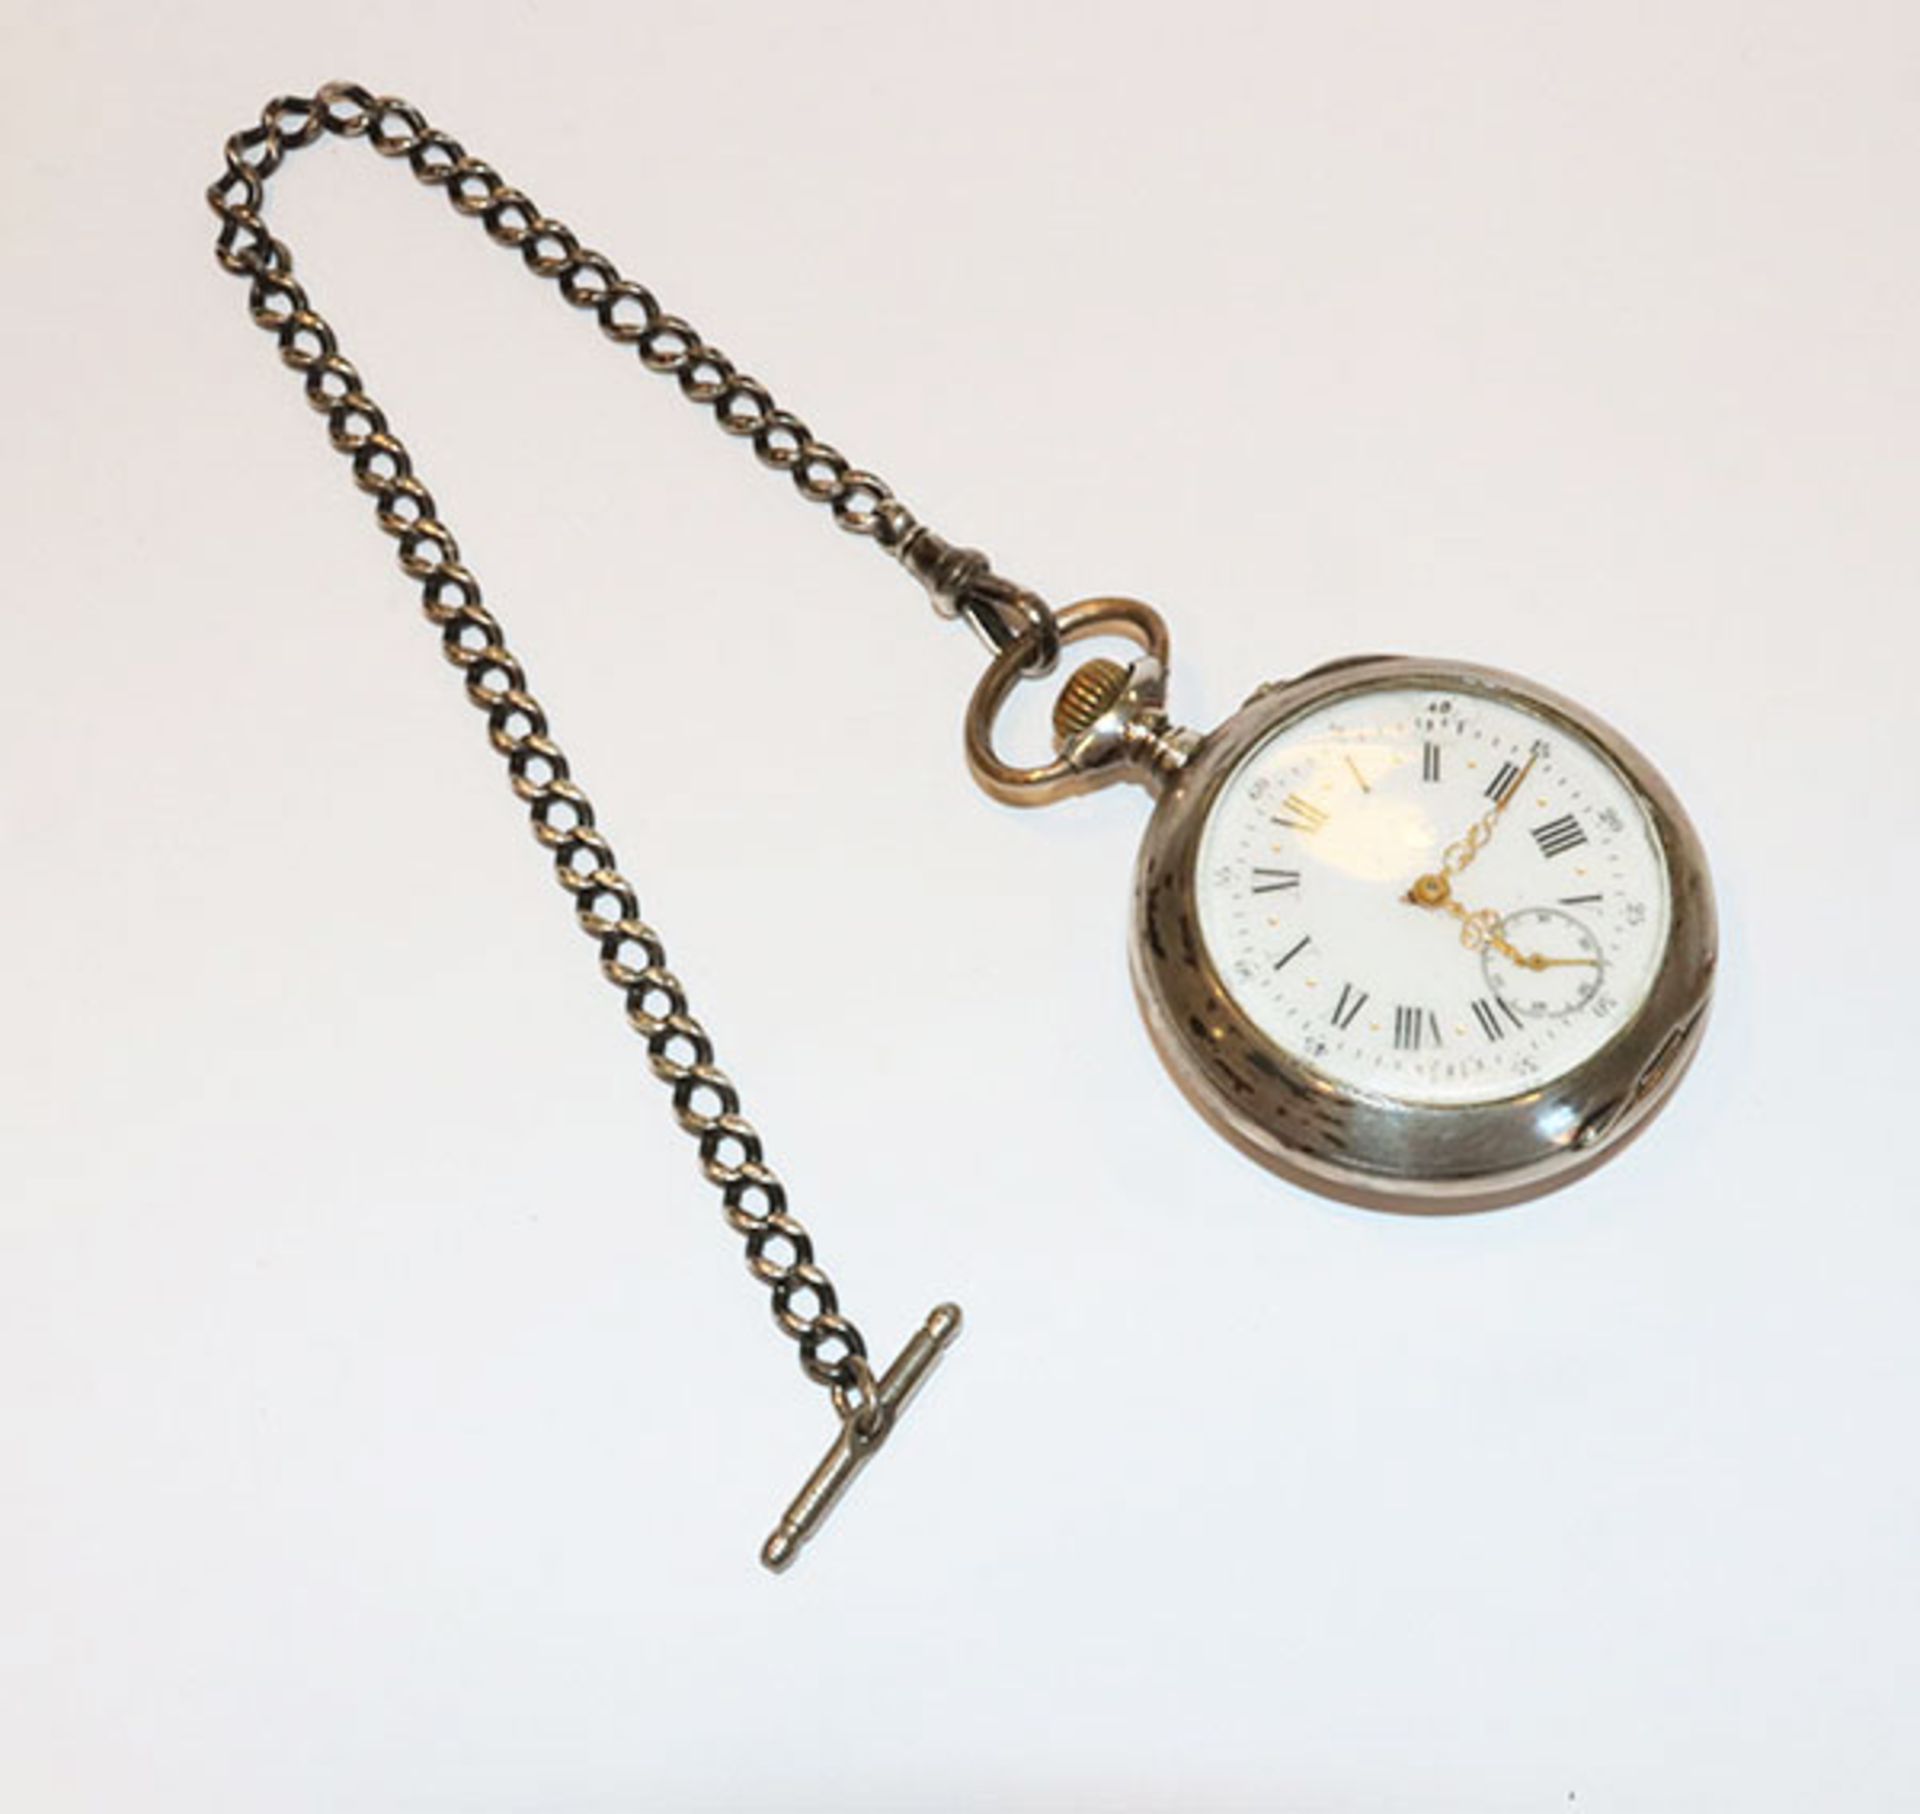 Silber Taschenuhr, D 4,5 cm, mit Kette, L 23 cm, 86 gr., Funktion nicht geprüft, Zifferblatt